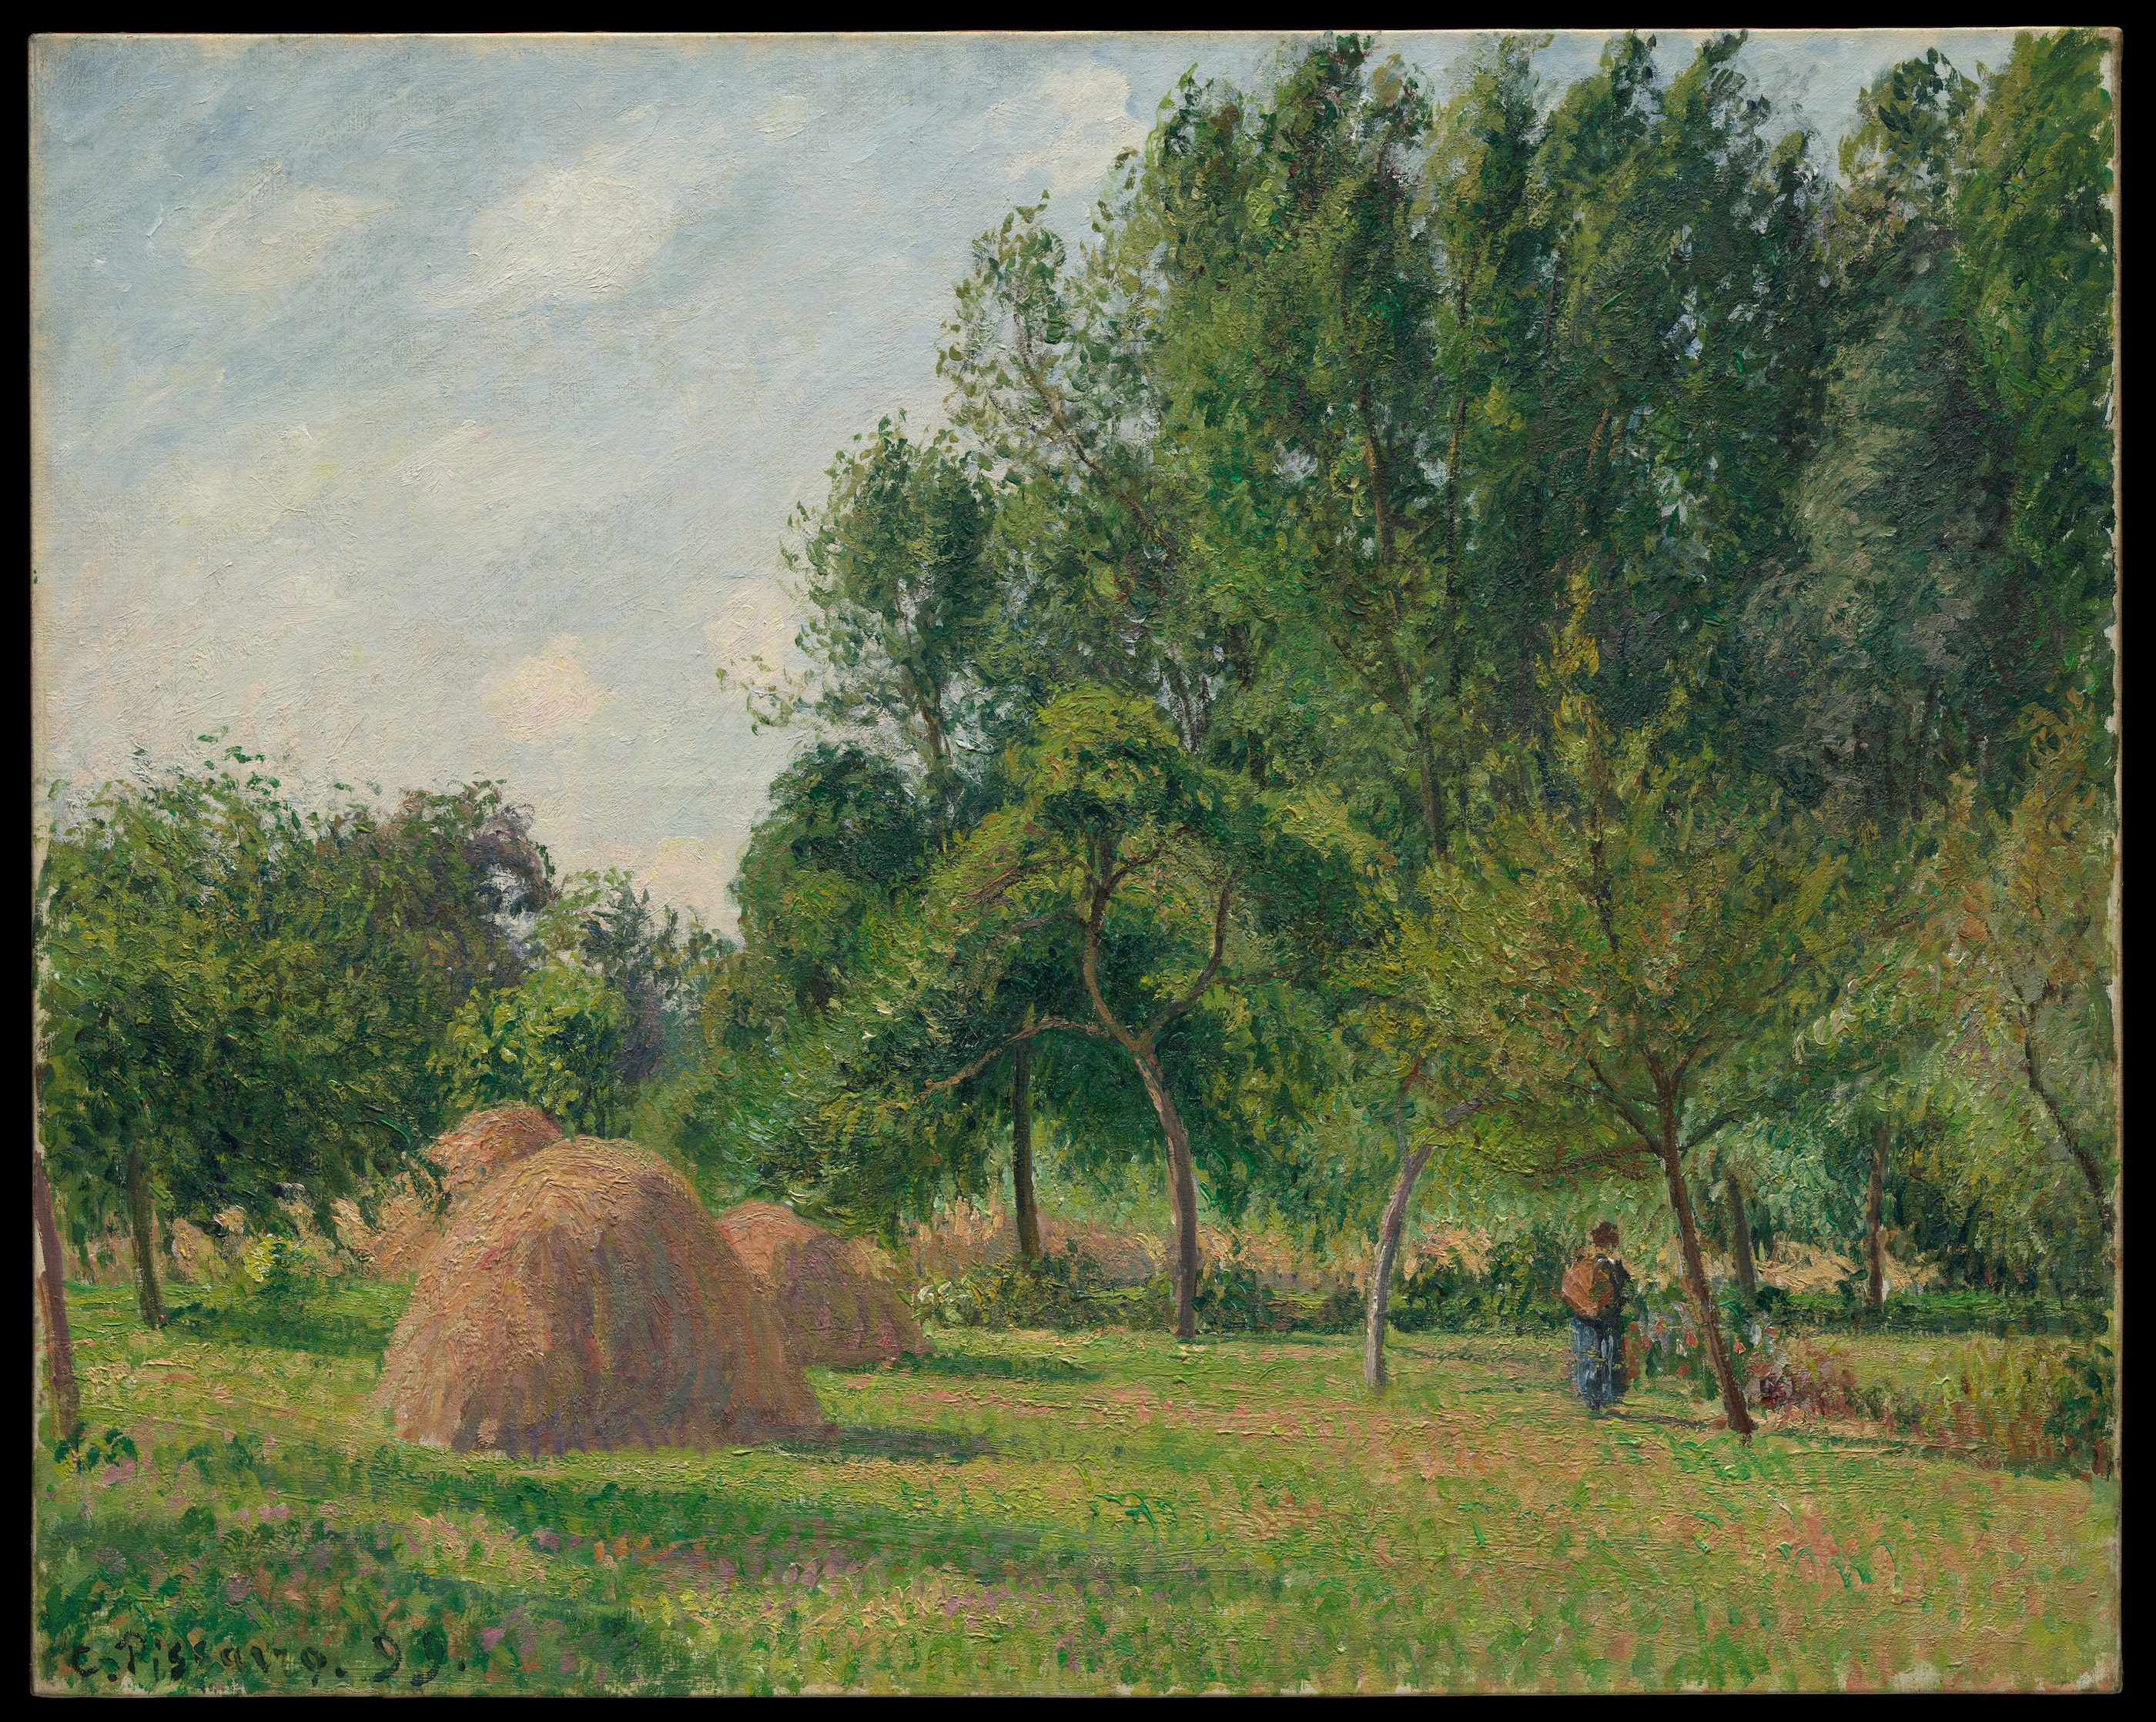 乾草堆，早晨，埃拉尼 by Camille Pissarro - 1899 - 63.5 x 80 cm 